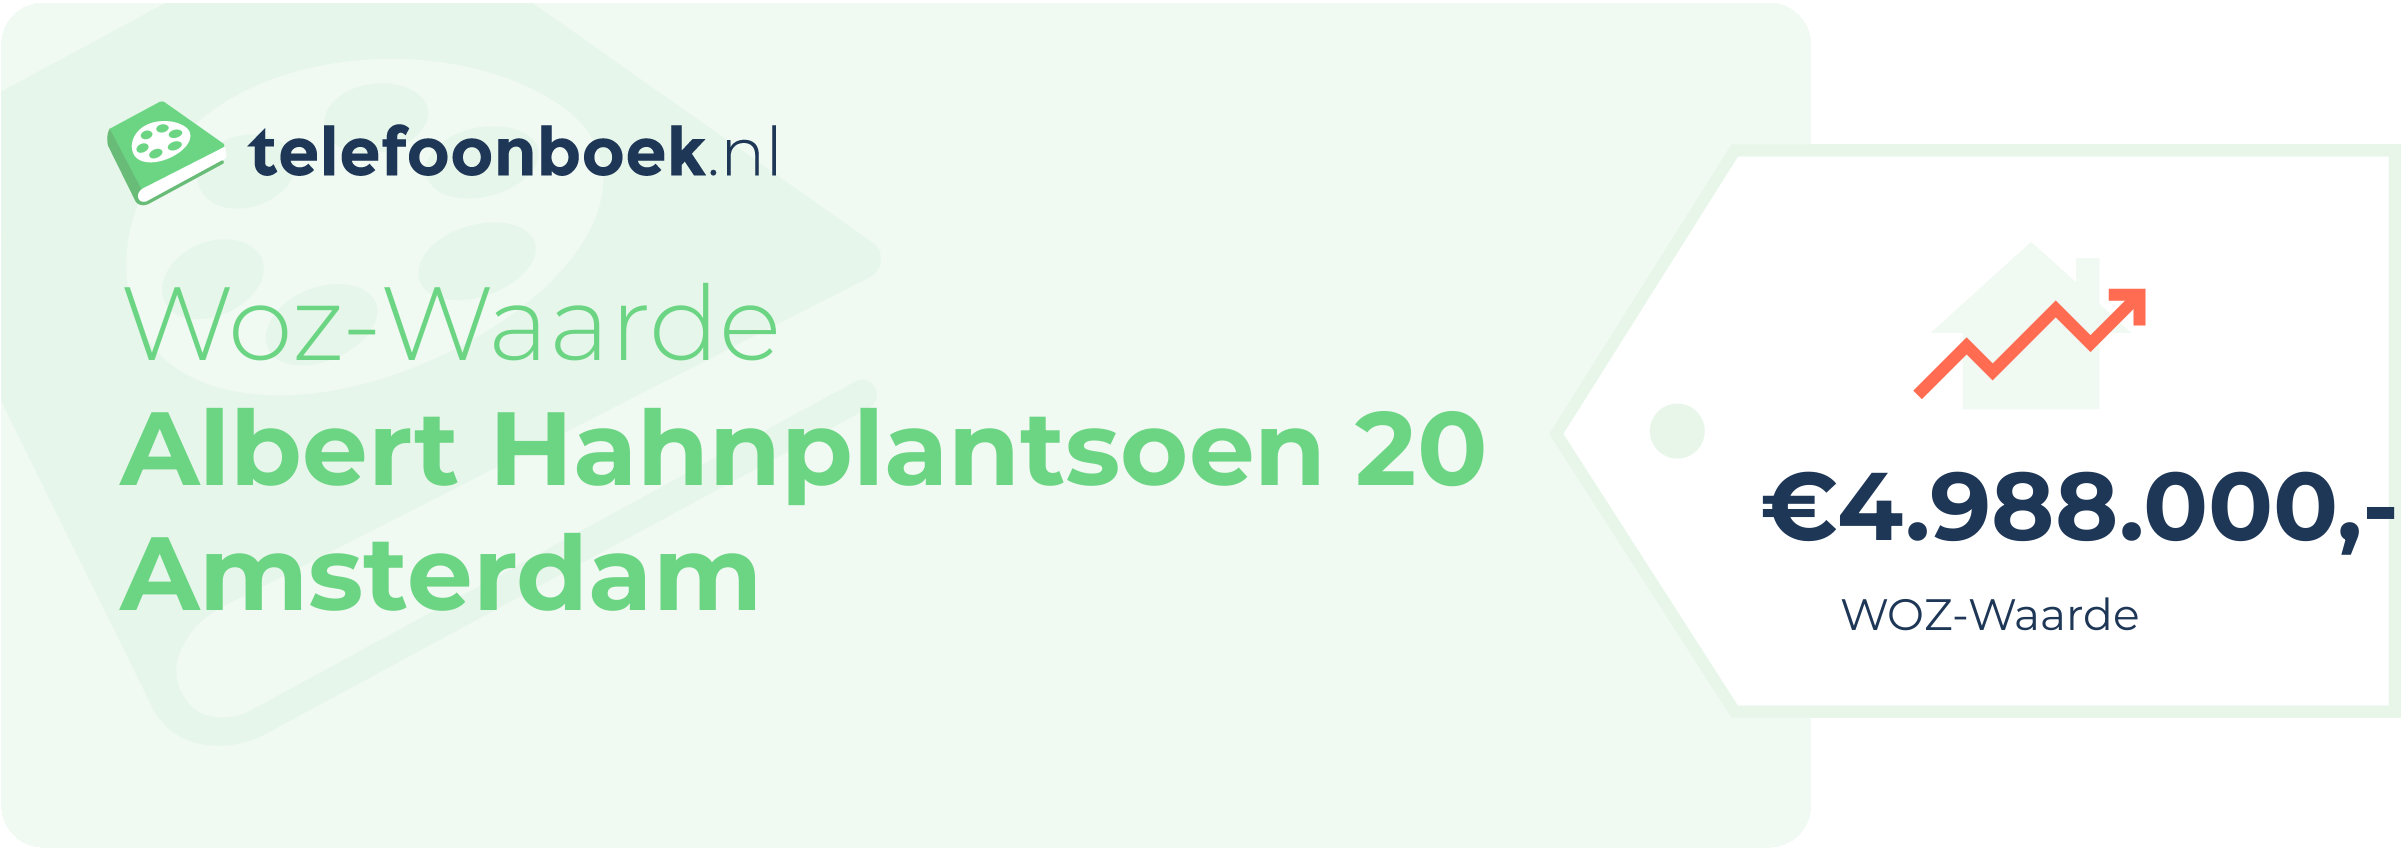 WOZ-waarde Albert Hahnplantsoen 20 Amsterdam